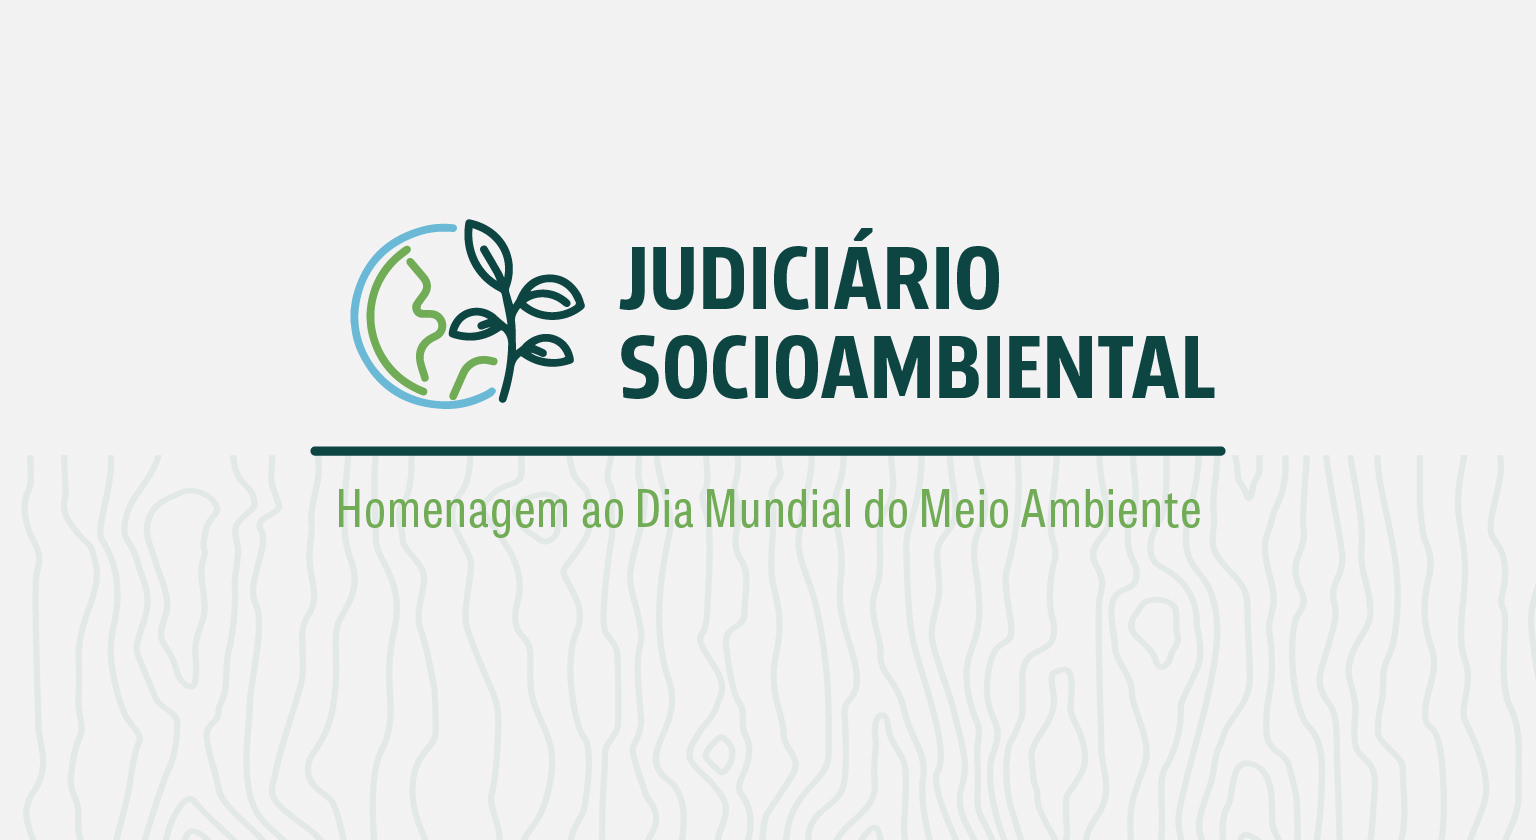 INSTITUCIONAL: Último dia para se inscrever no evento “Judiciário Socioambiental” do CNJ que ocorre nesta quinta-feira (23)